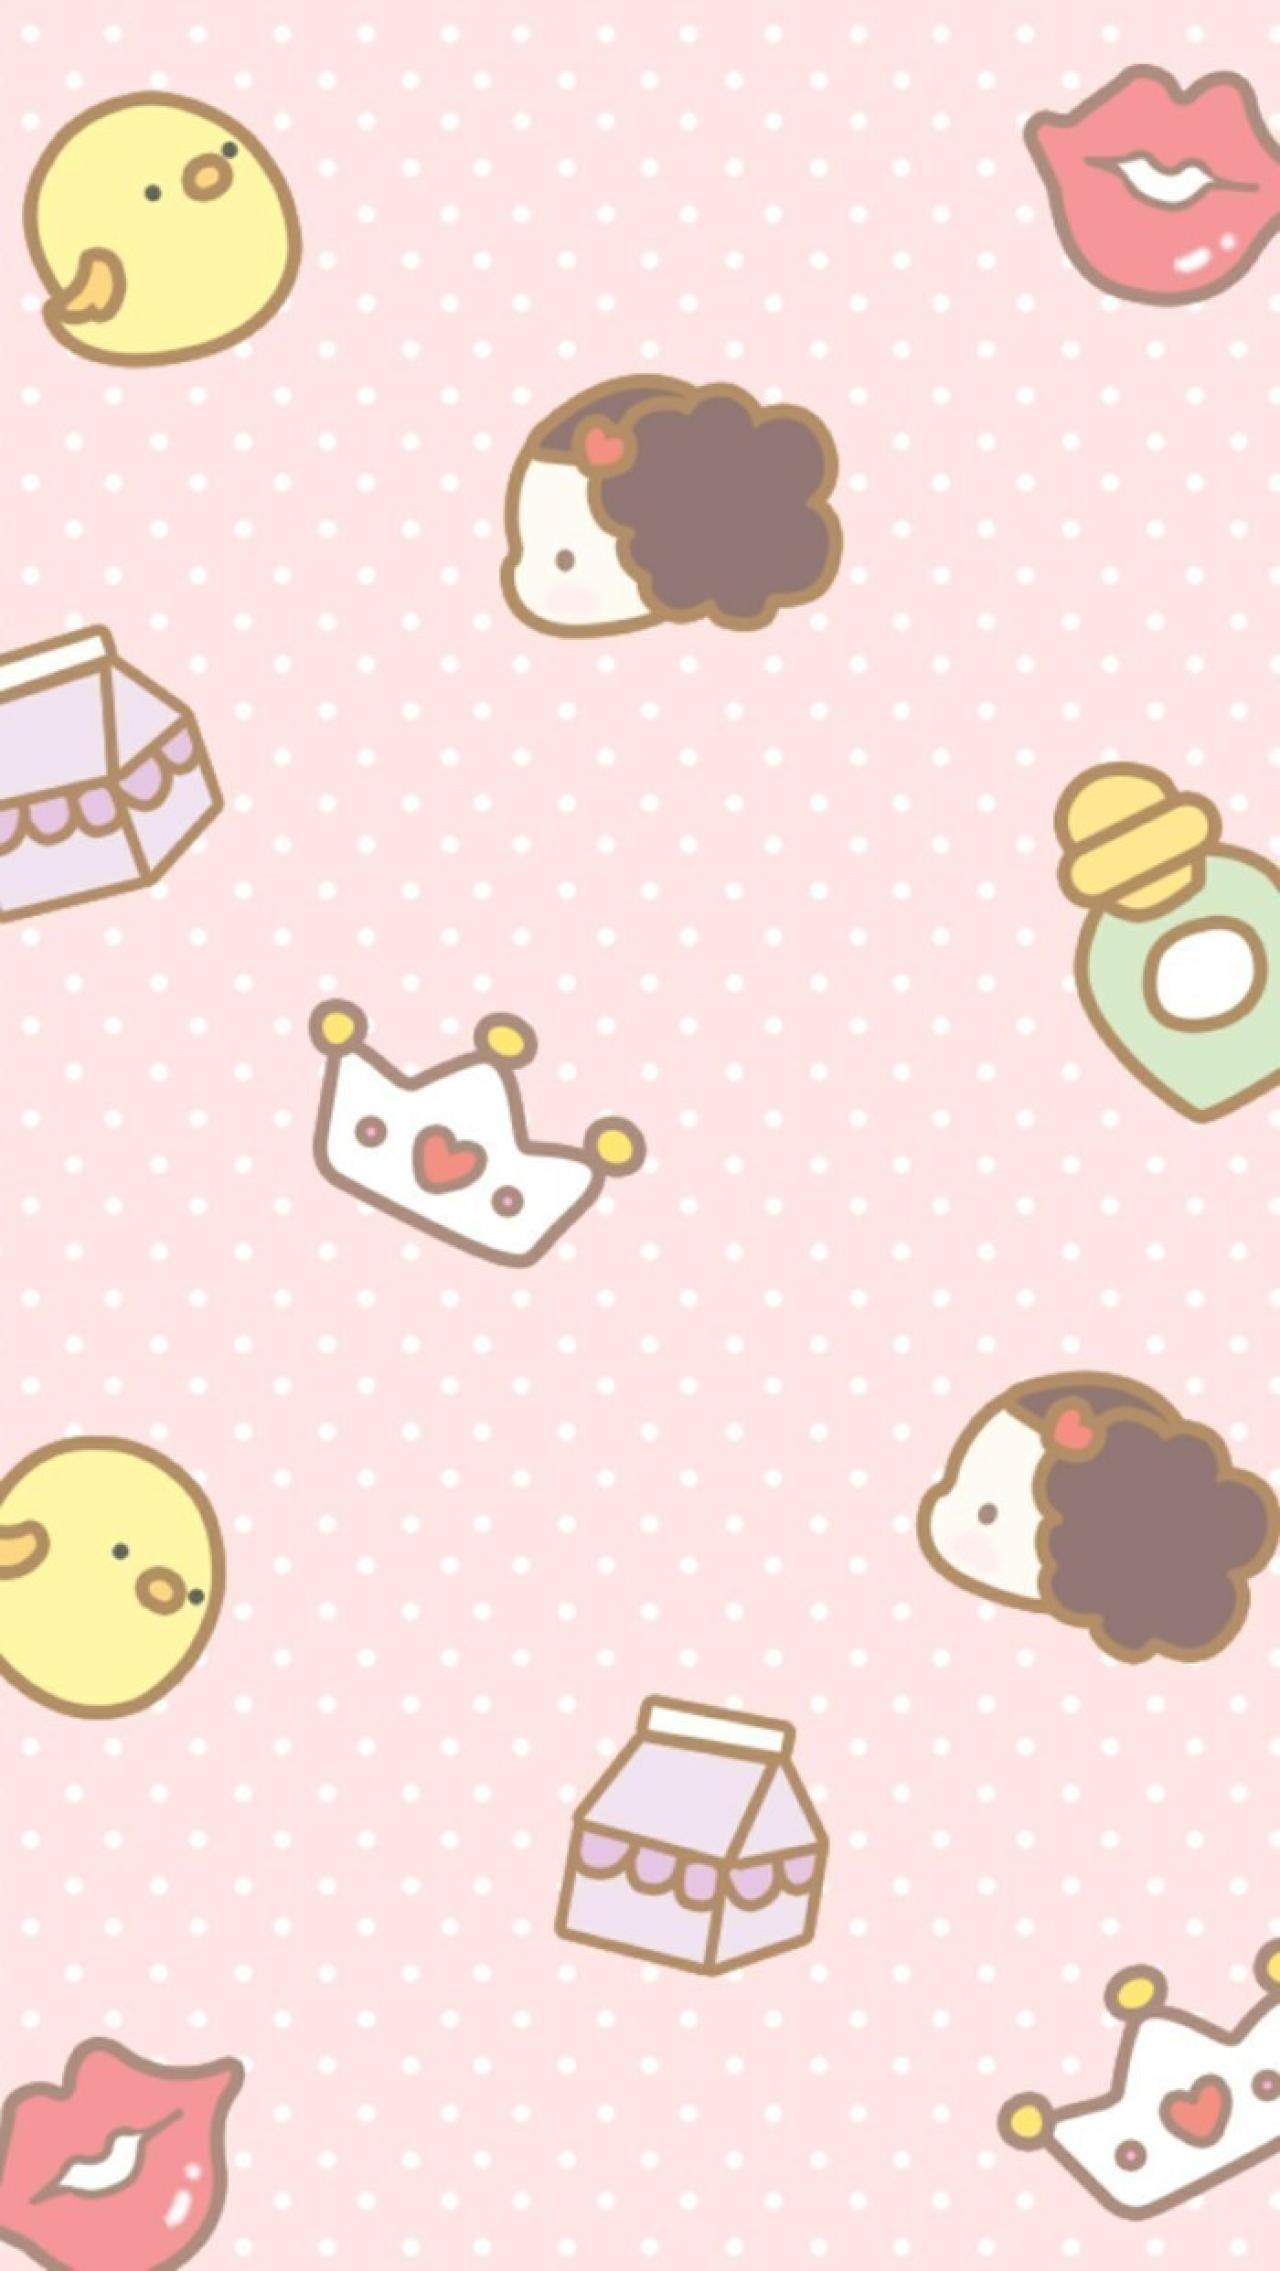 粉色点状背景，小鸡、小女孩头像、王冠、牛奶盒装饰的手机壁纸